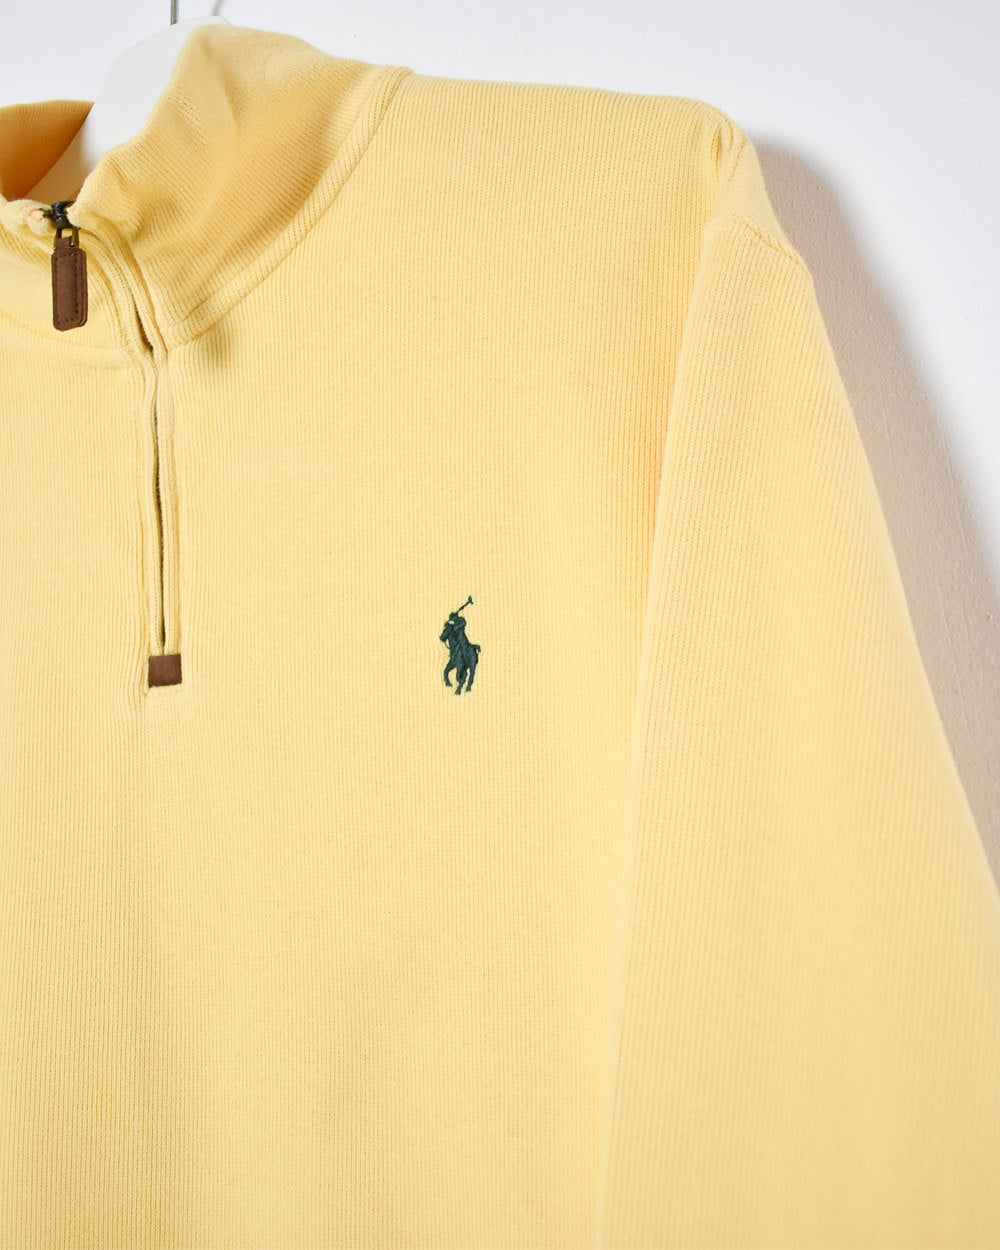 Yellow Ralph Lauren 1/4 Zip Sweatshirt - Large